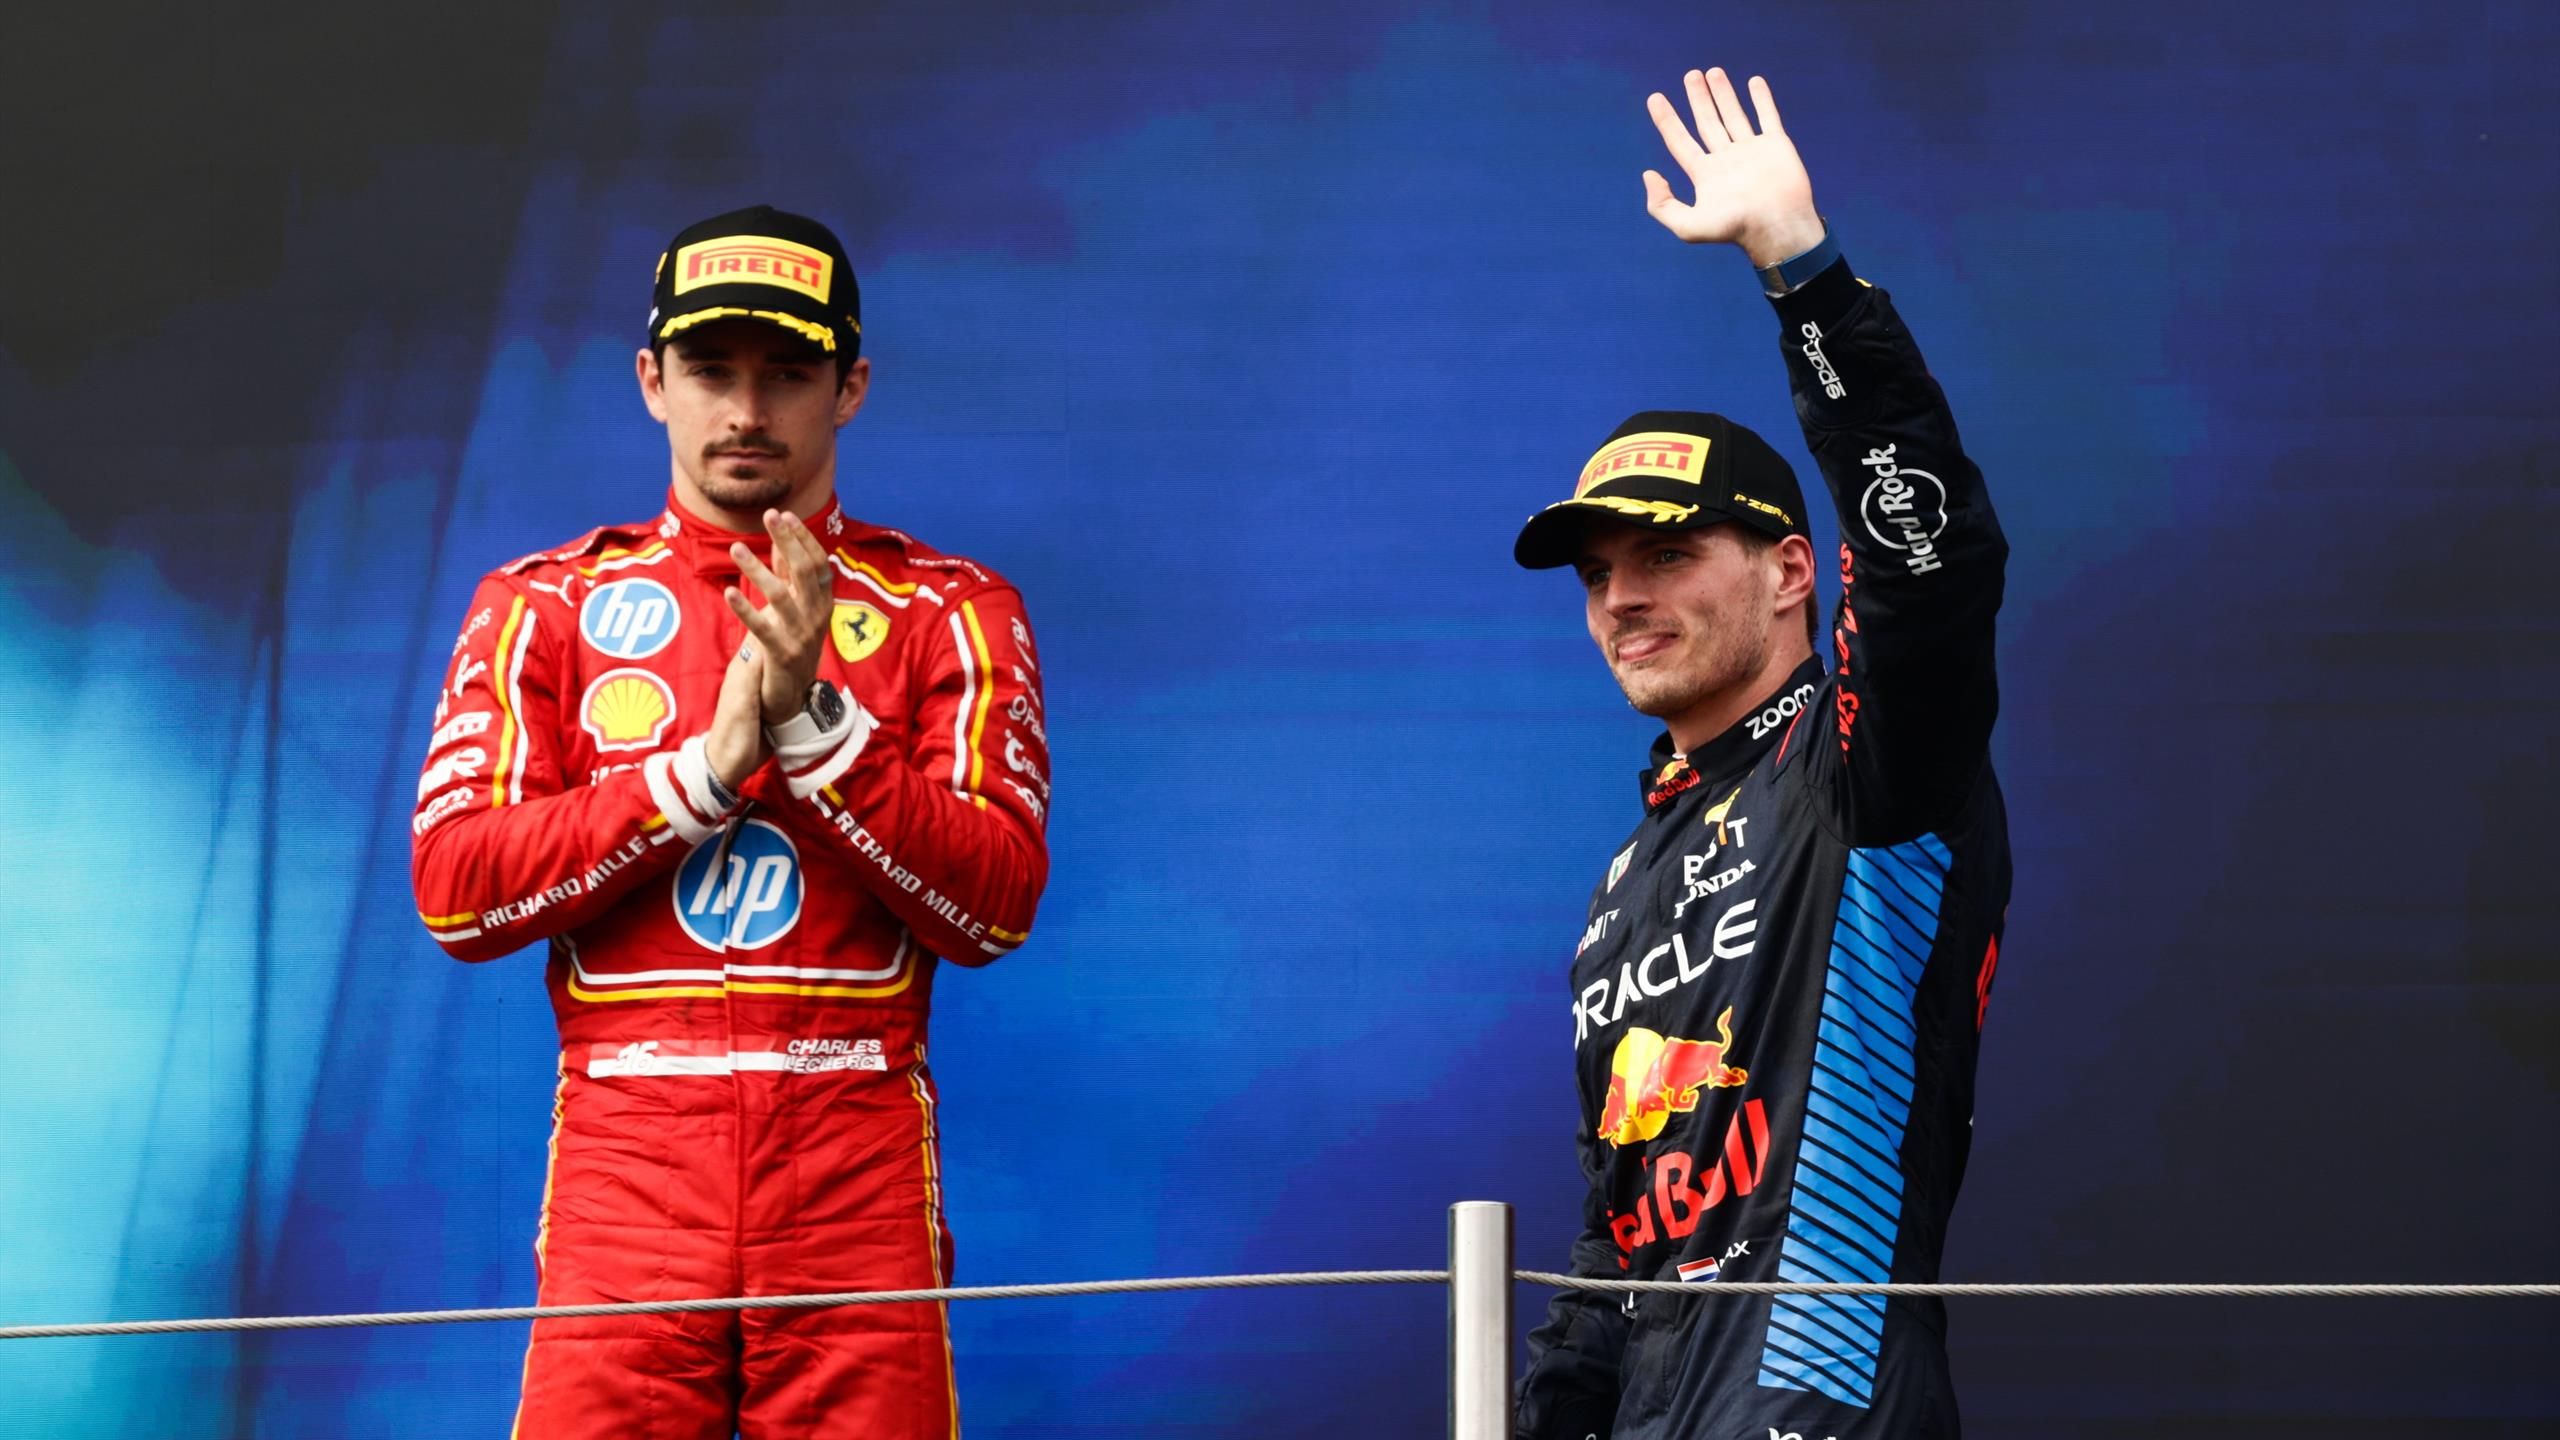 Classifica piloti e costruttori: Max-Red Bull leader, ma la Ferrari c'è